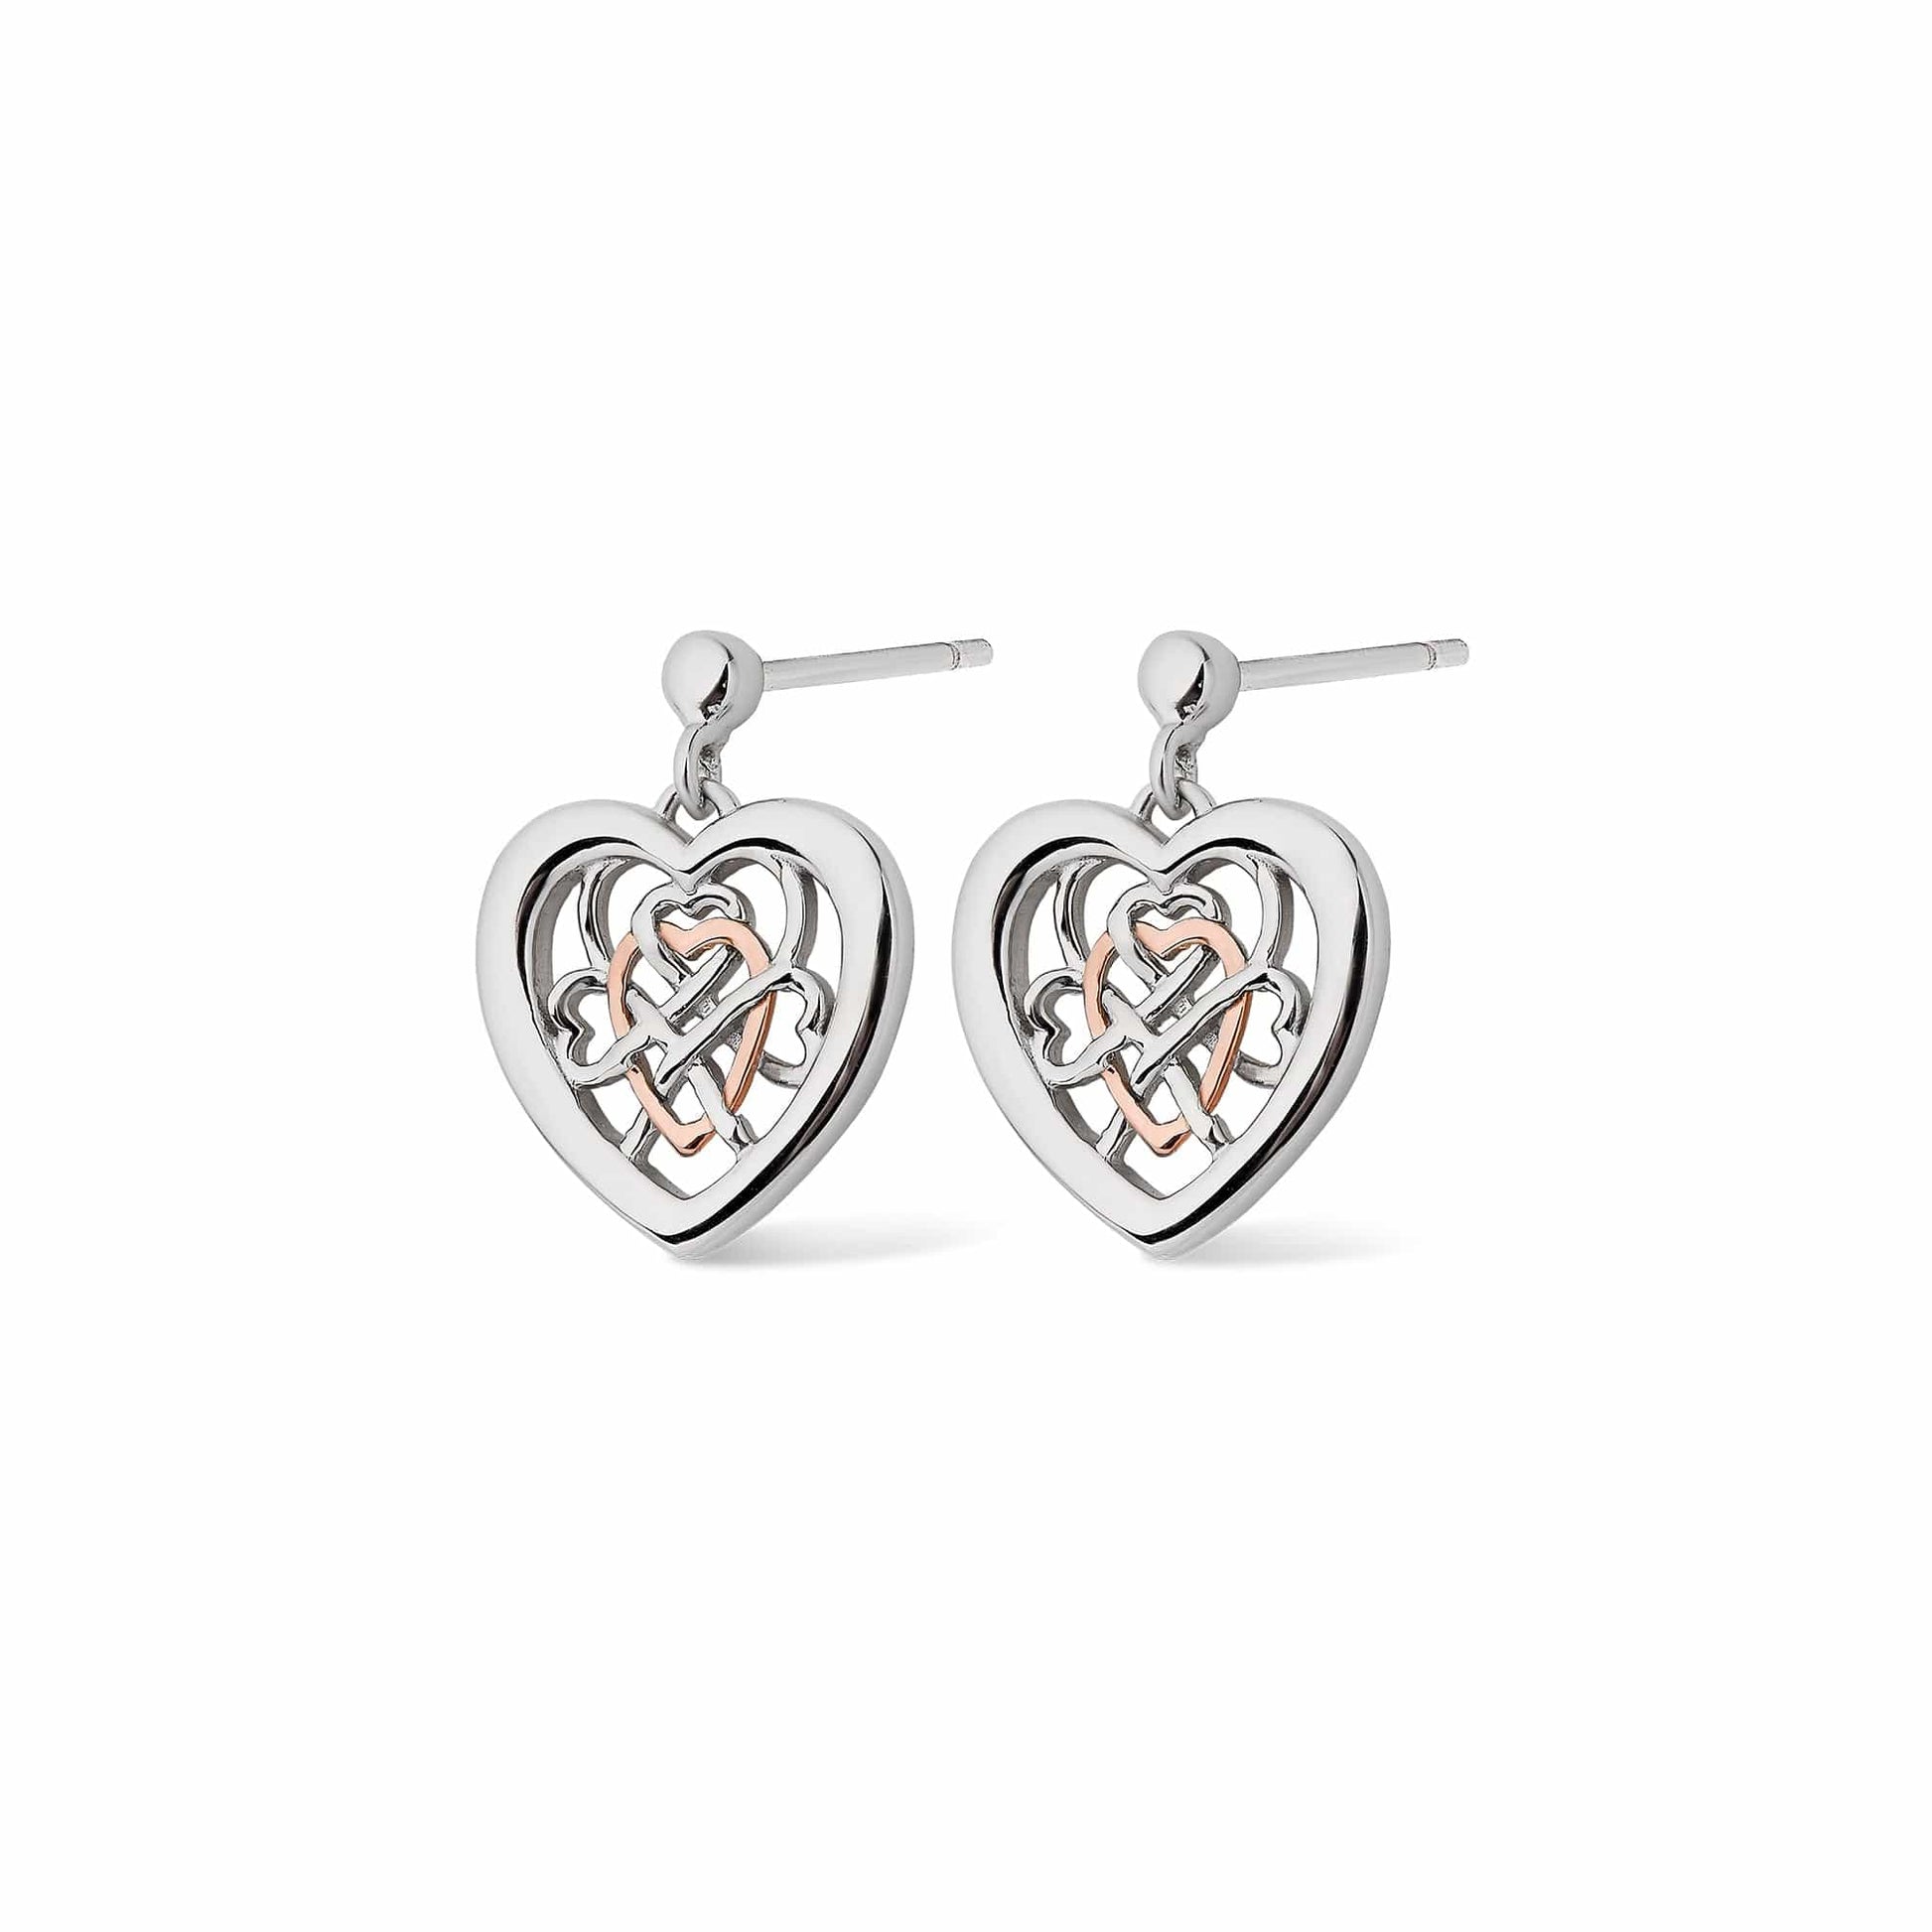 Welsh Royalty Silver Heart Stud Earrings